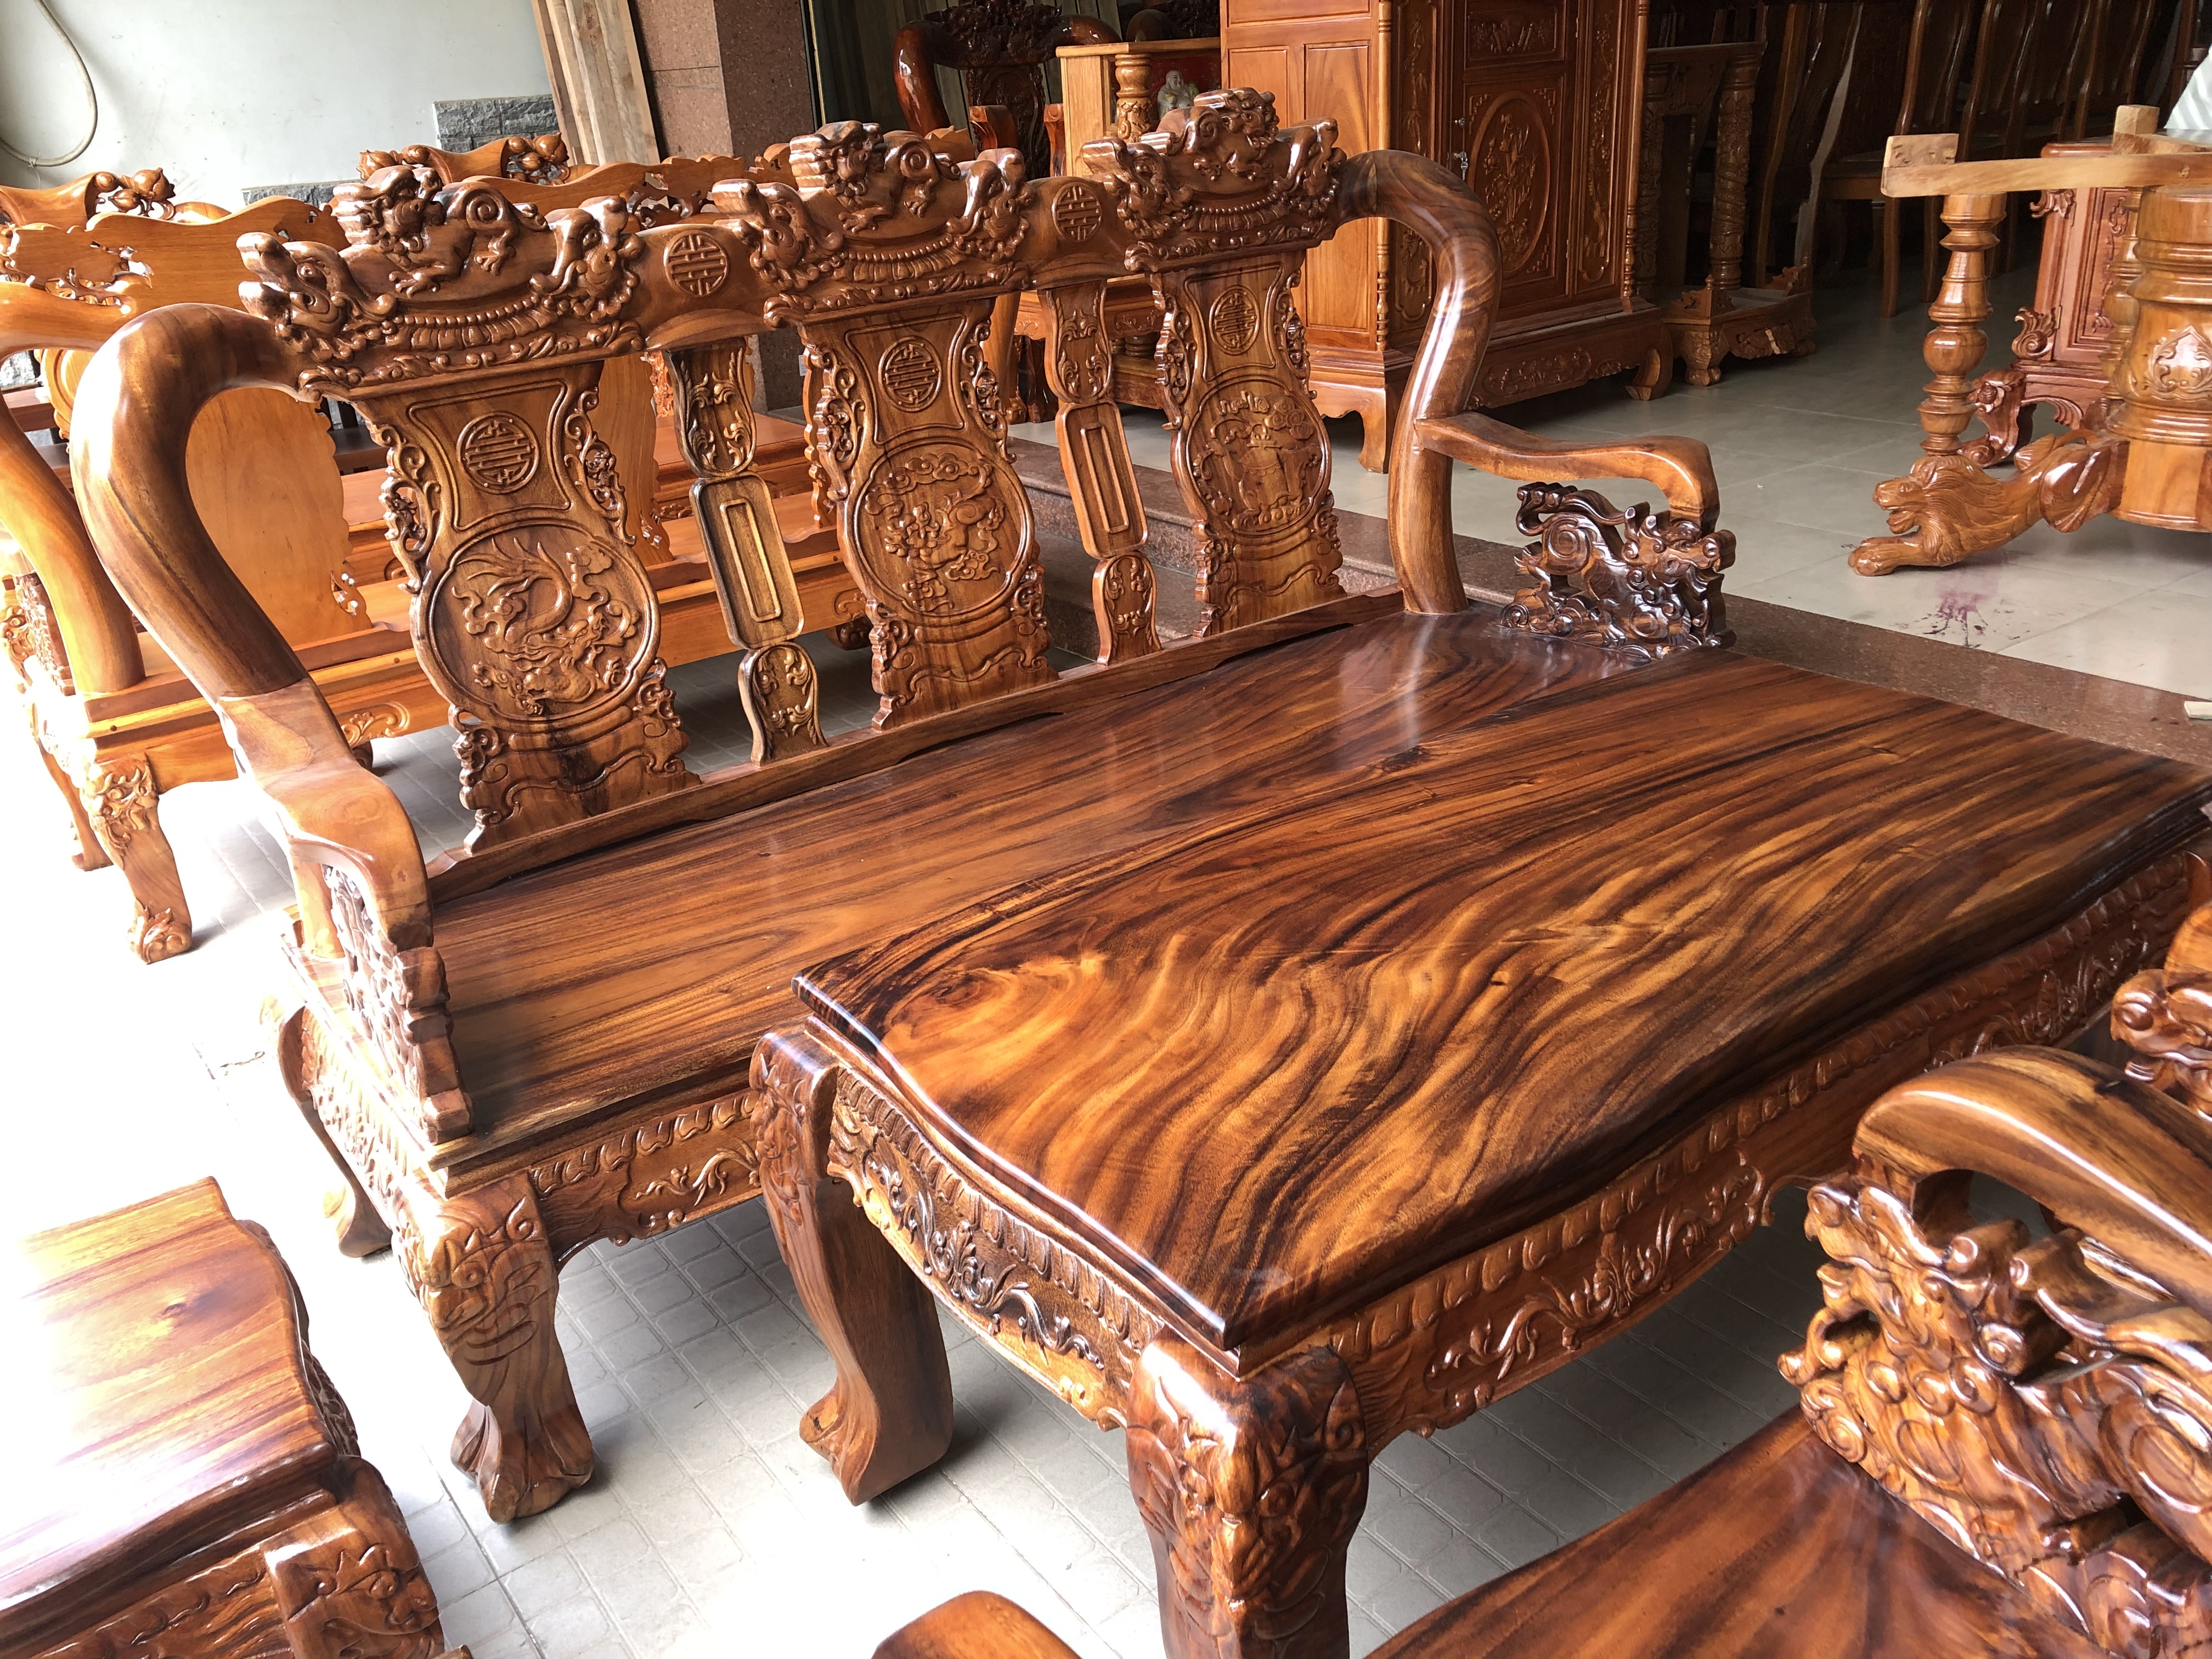 Với bộ bàn ghế salon gỗ Lim Đen, không chỉ mang lại nét đẹp sang trọng và hiện đại cho không gian thẩm mỹ của bạn mà còn đảm bảo tính tiện dụng, độ bền bỉ và chất lượng tốt. Với kiểu dáng độc đáo và màu sắc đặc trưng của gỗ Lim Đen, bộ bàn ghế này chắc chắn sẽ là lựa chọn hoàn hảo cho những ai yêu thích phong cách hiện đại và sang trọng.